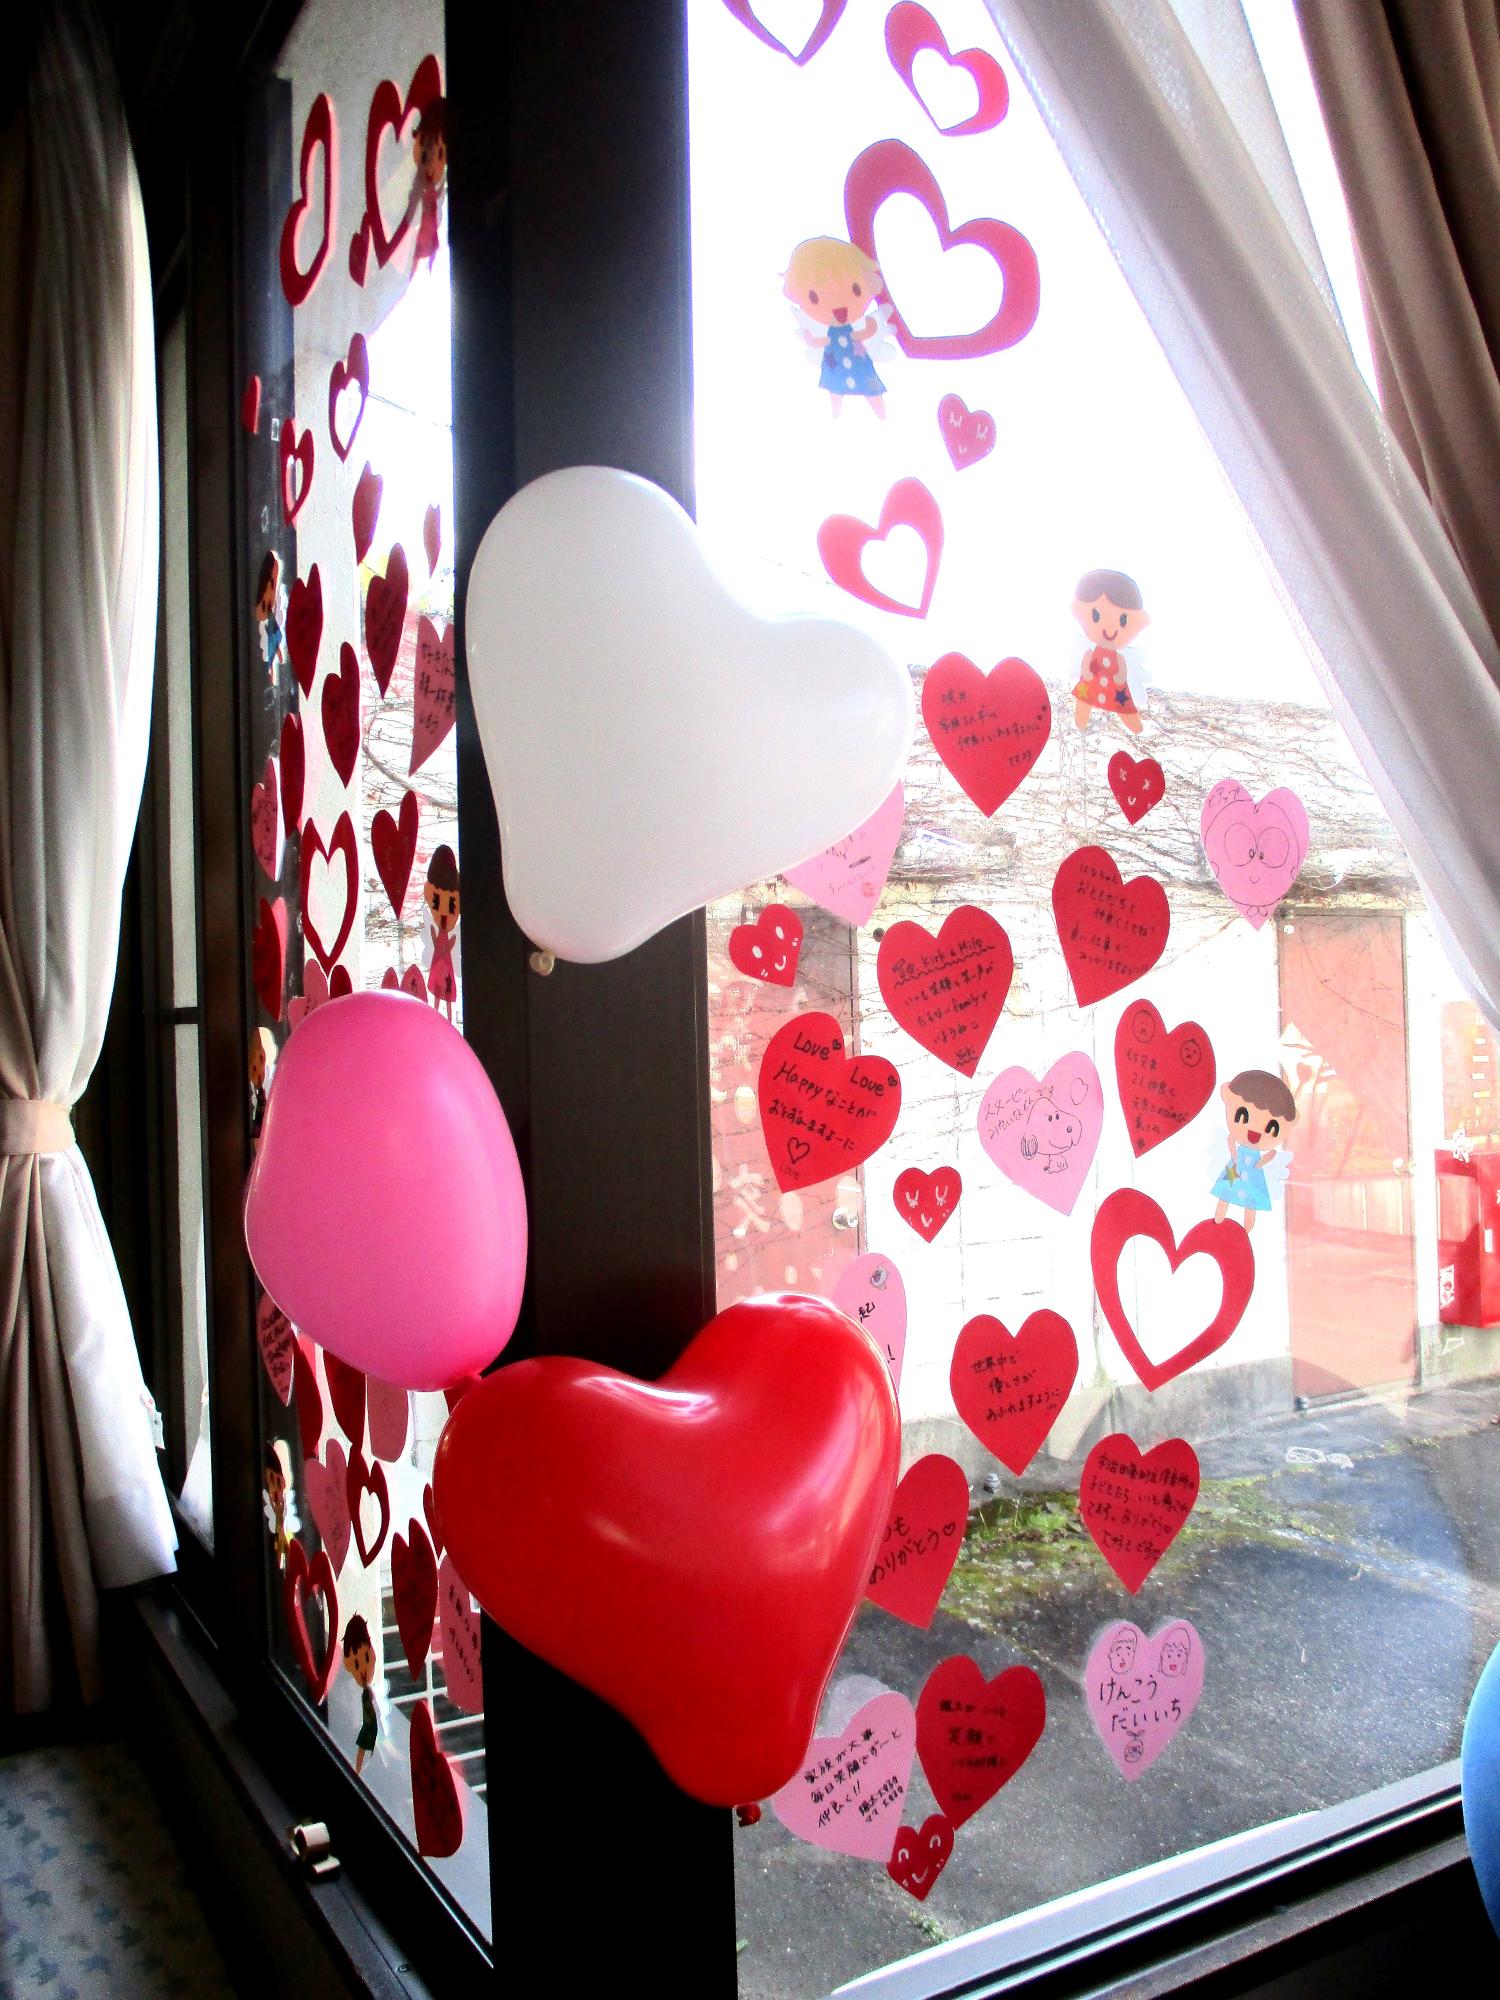 ハート型のメッセージと風船で飾られた窓の写真